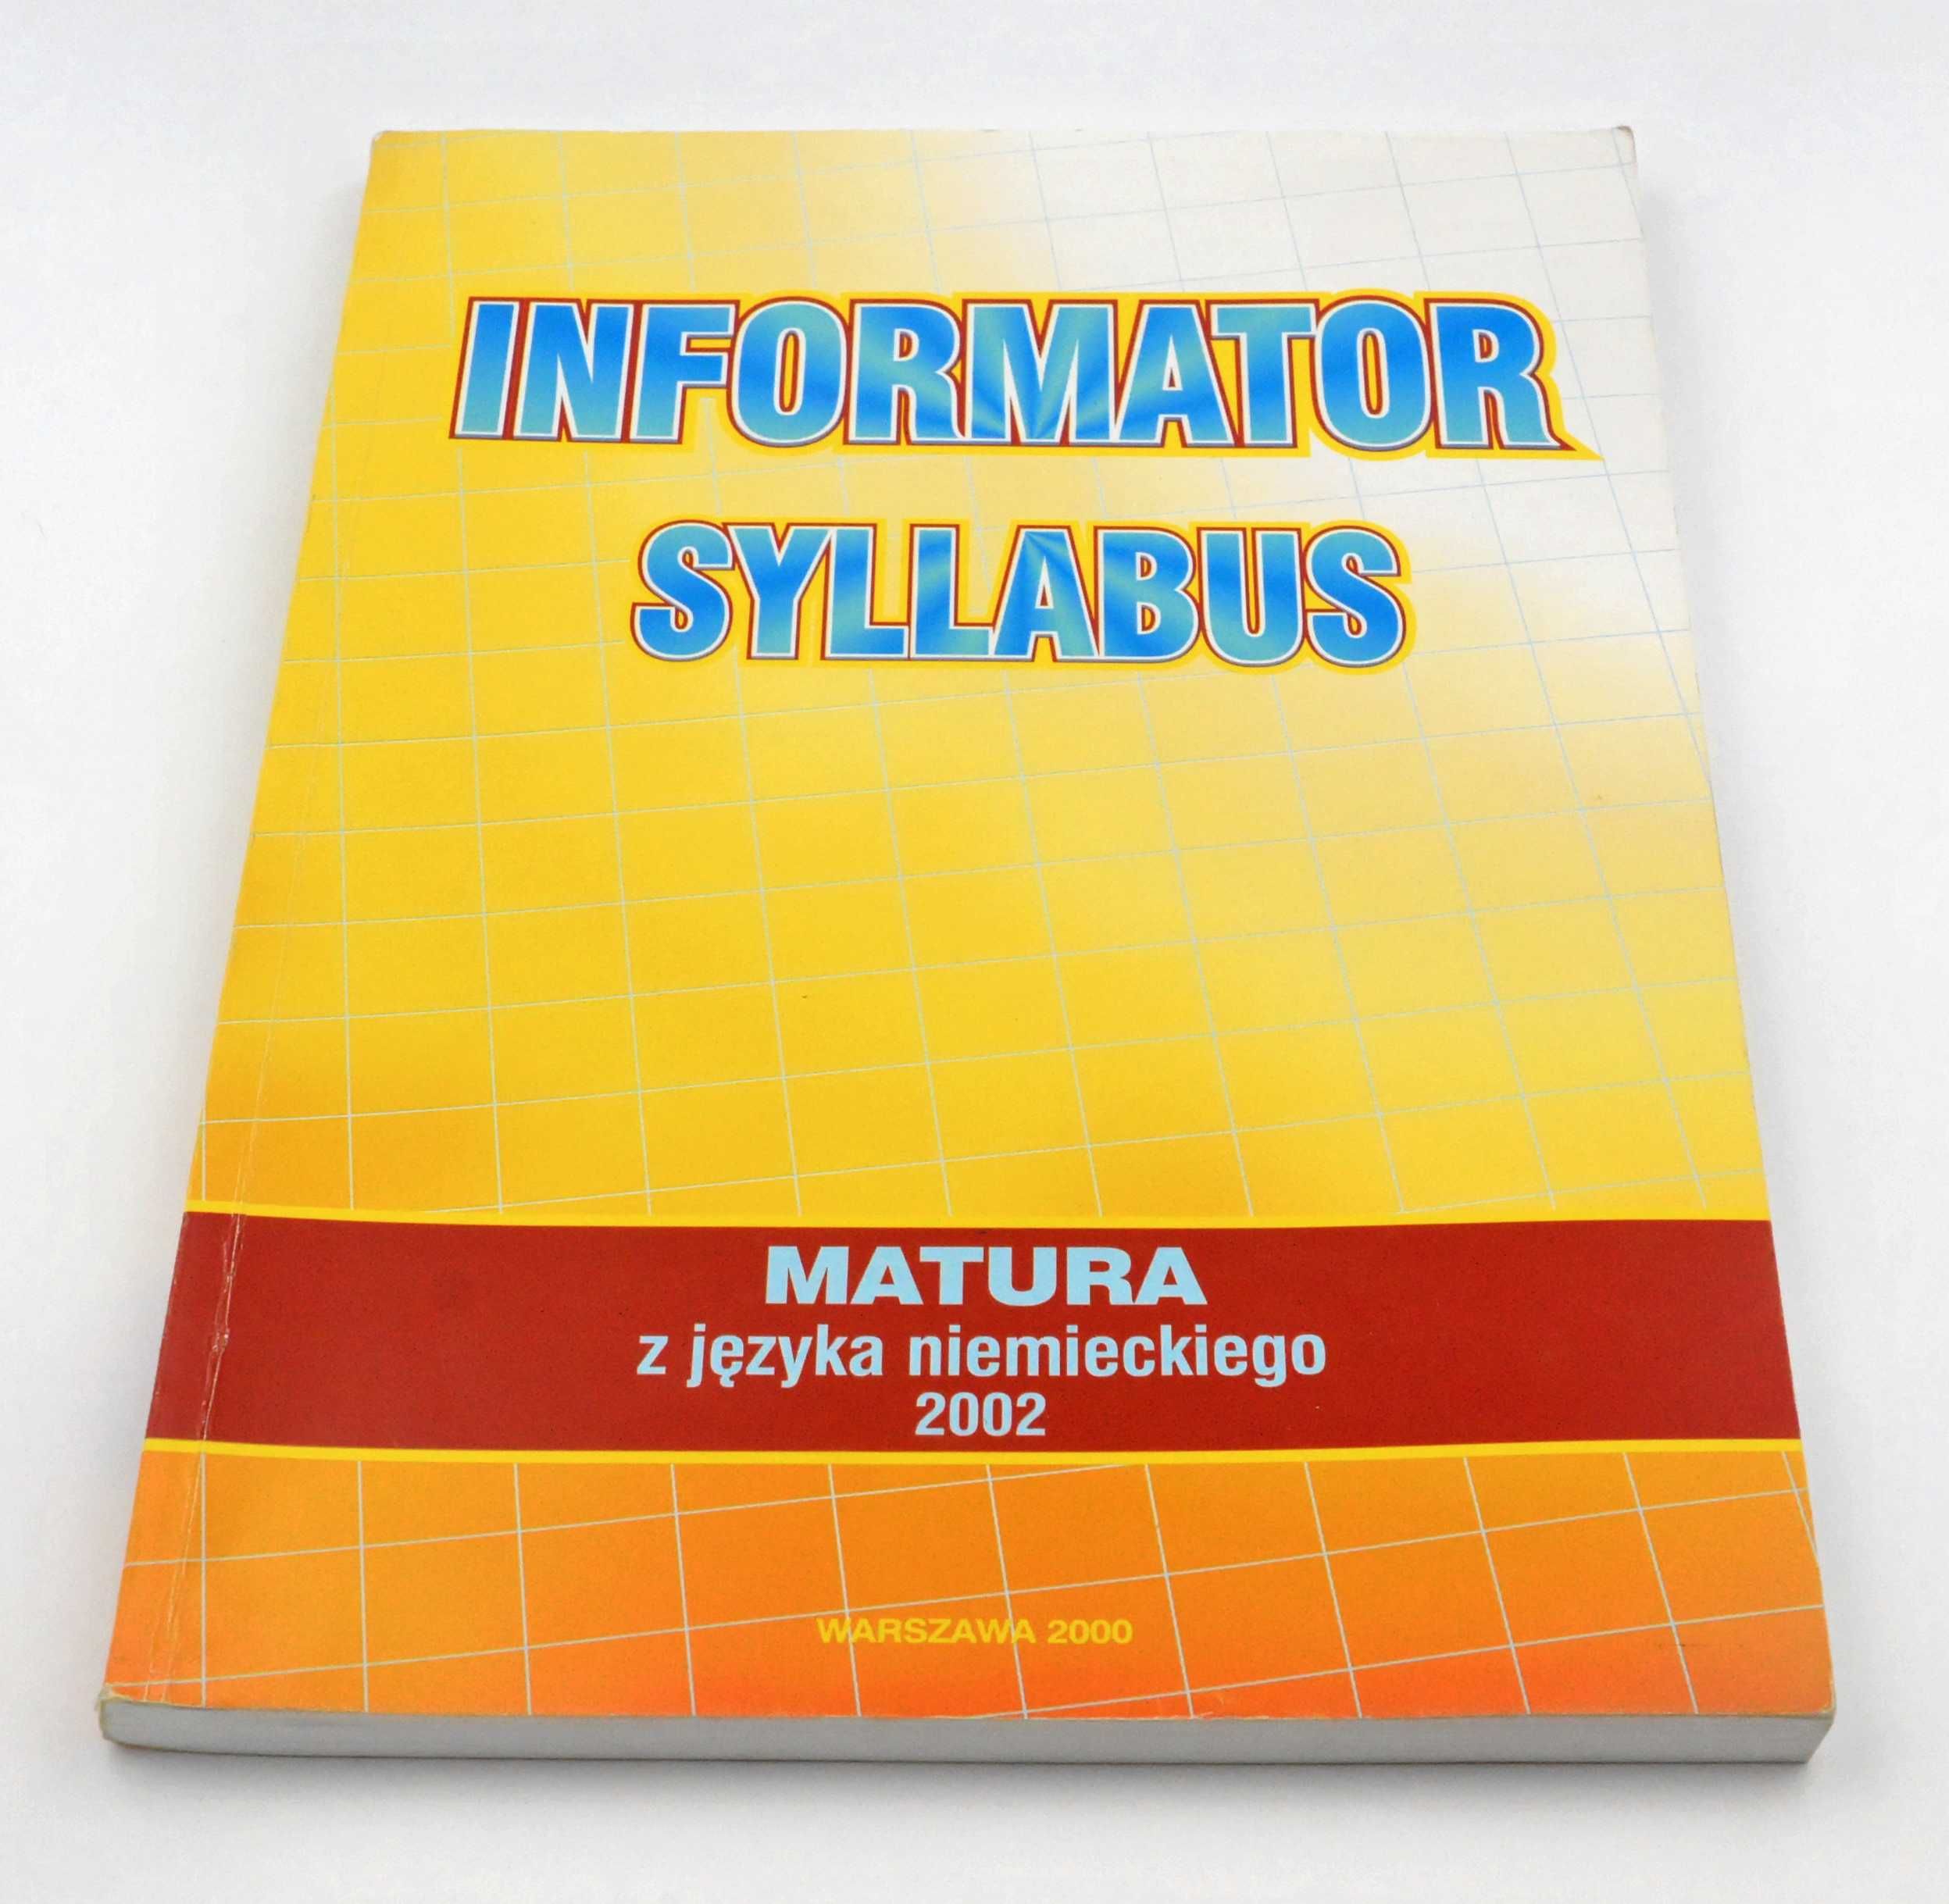 Informator Syllabus - Matura z języka niemieckiego 2002